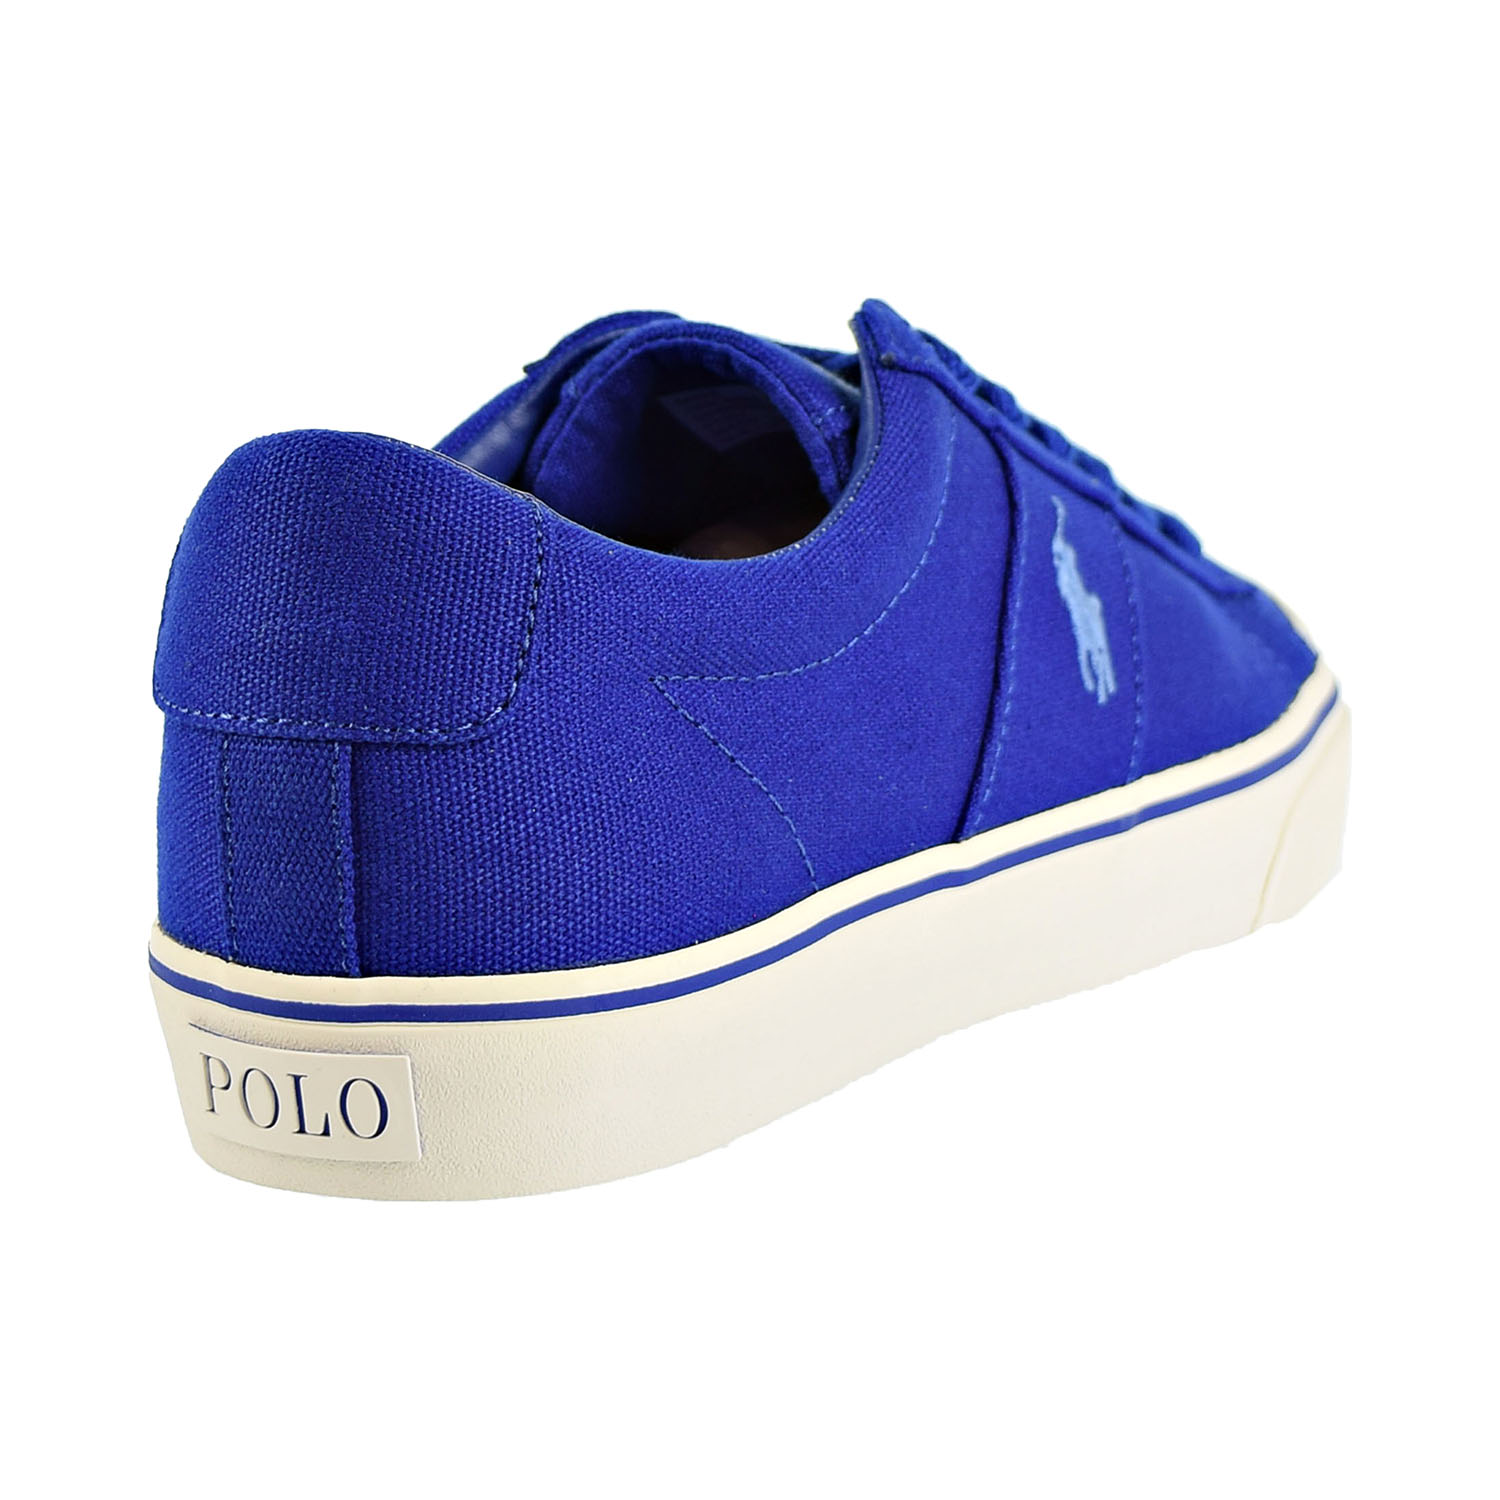 Polo Ralph Lauren Sayer Men's Shoes Blue 816710017-003 - image 3 of 6